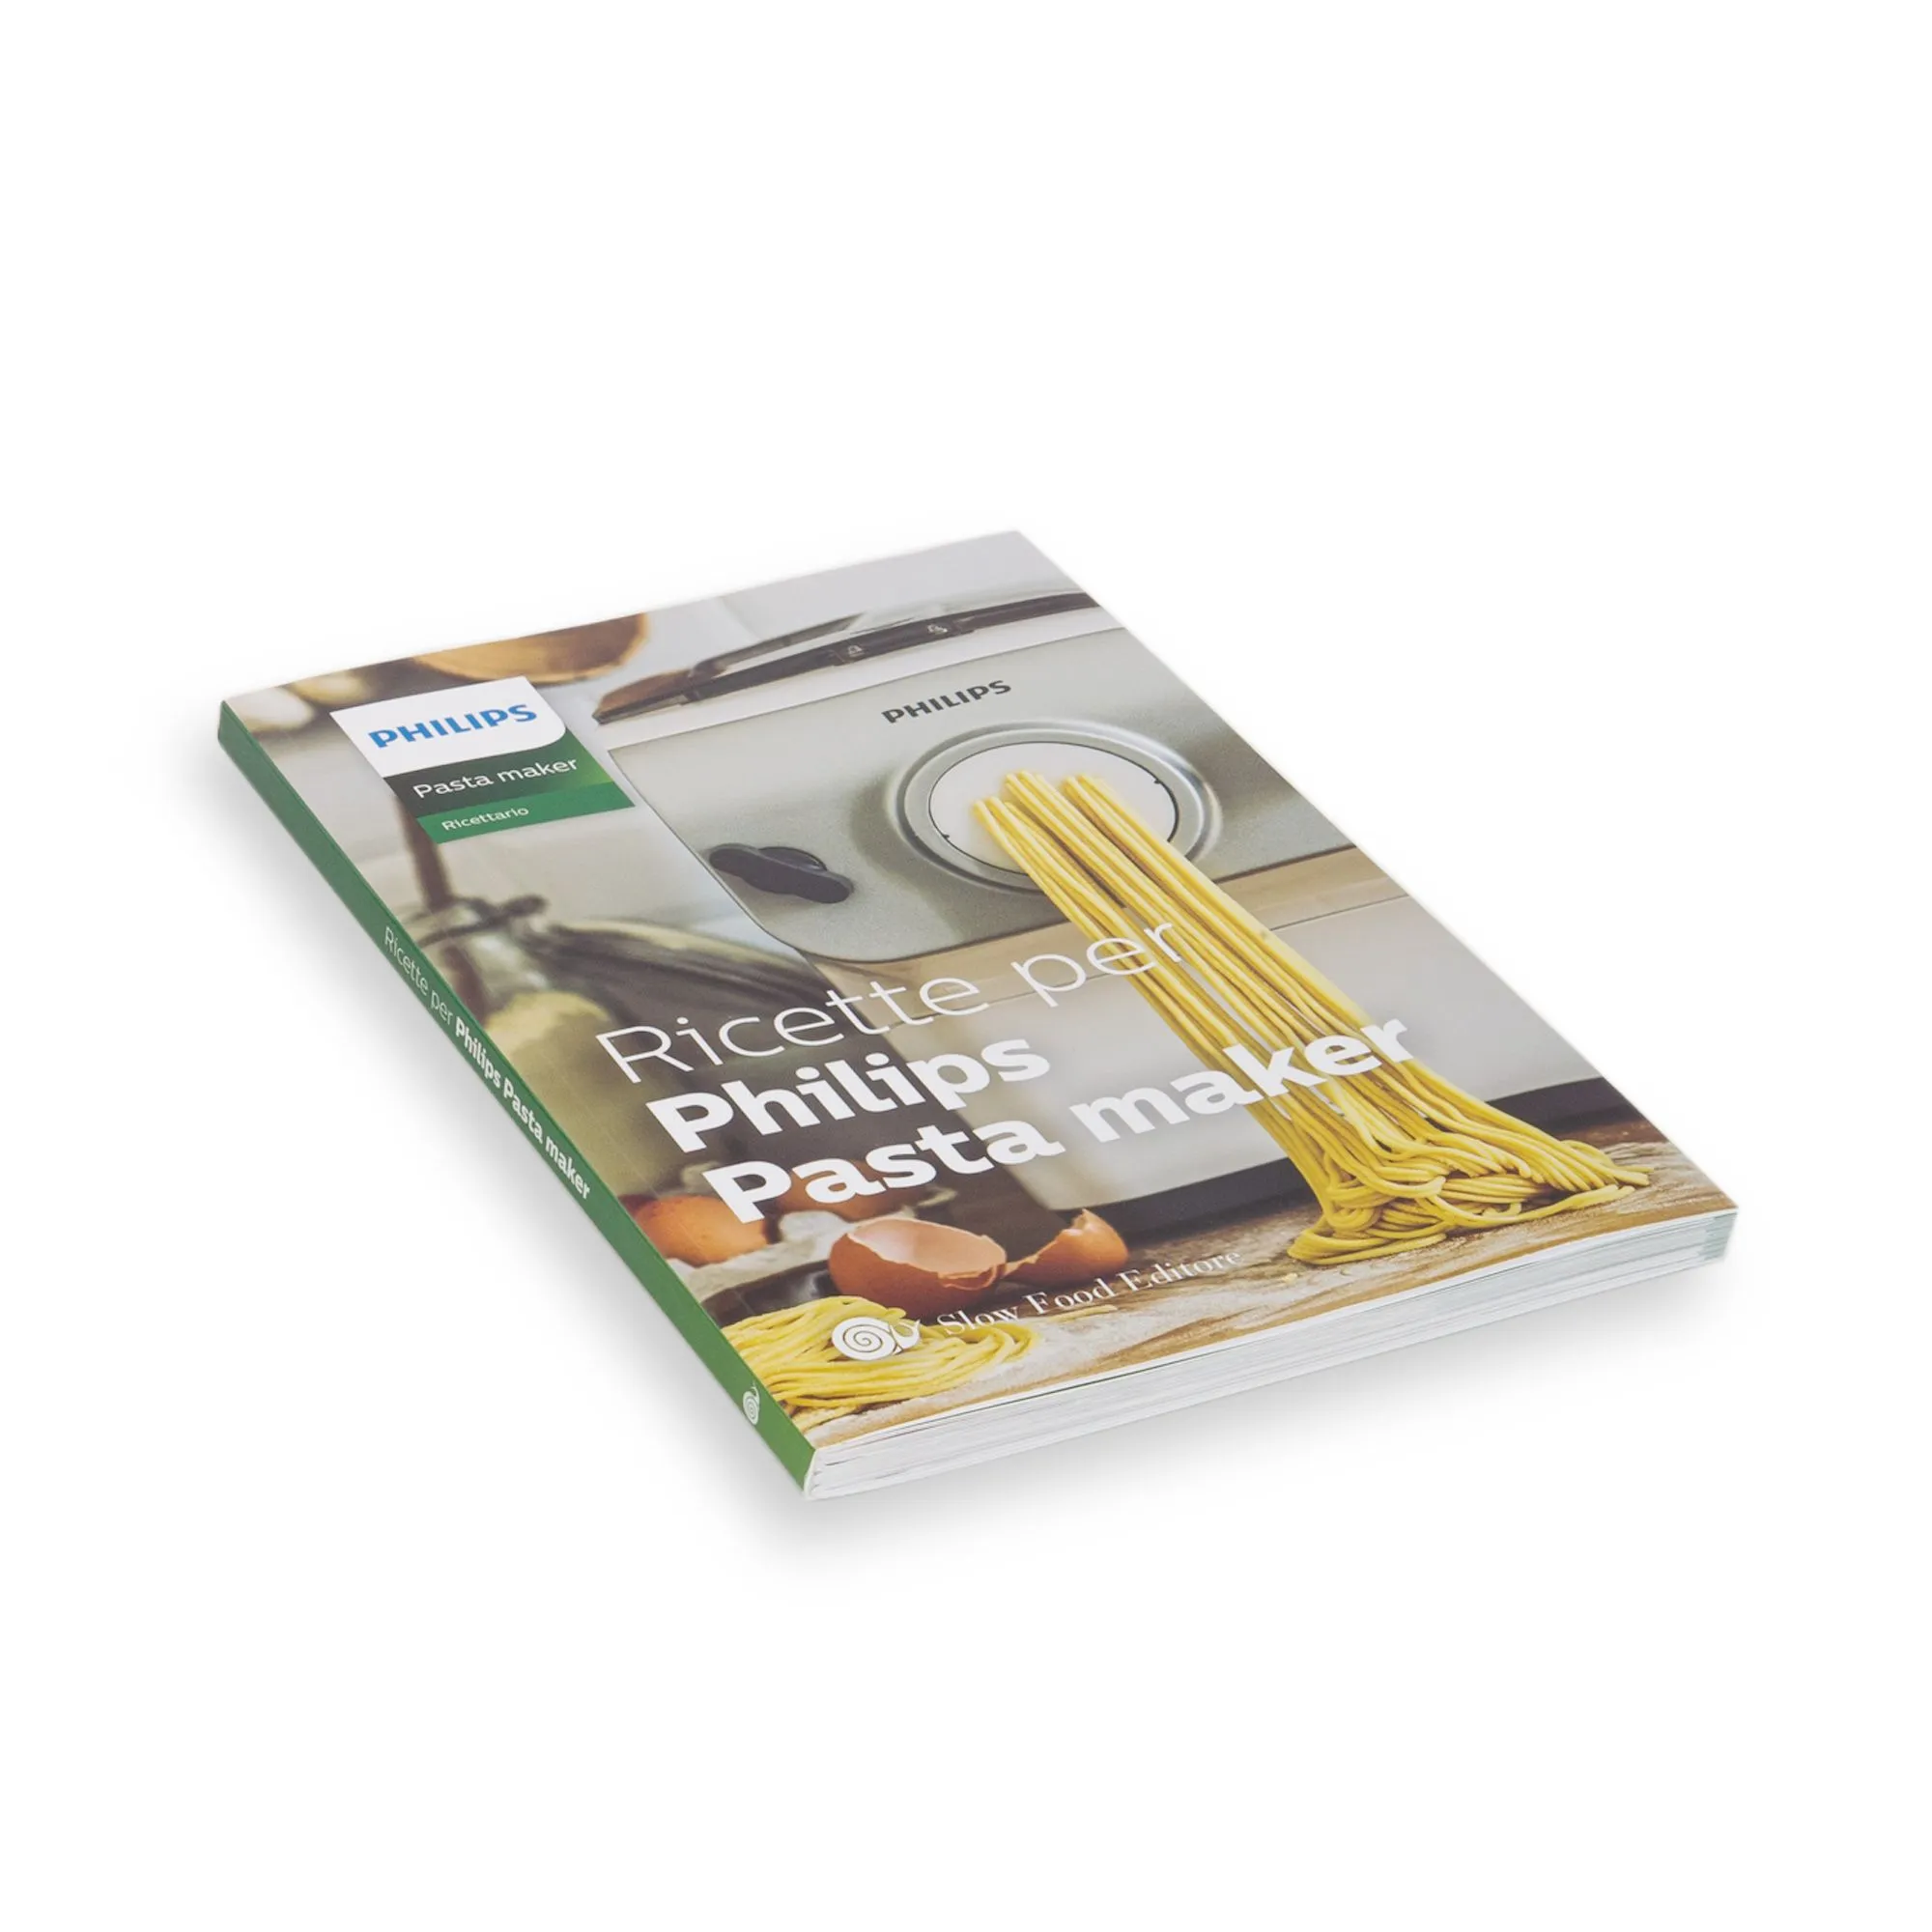 Libro di ricette di Romina Baratta per Philips Pasta Maker